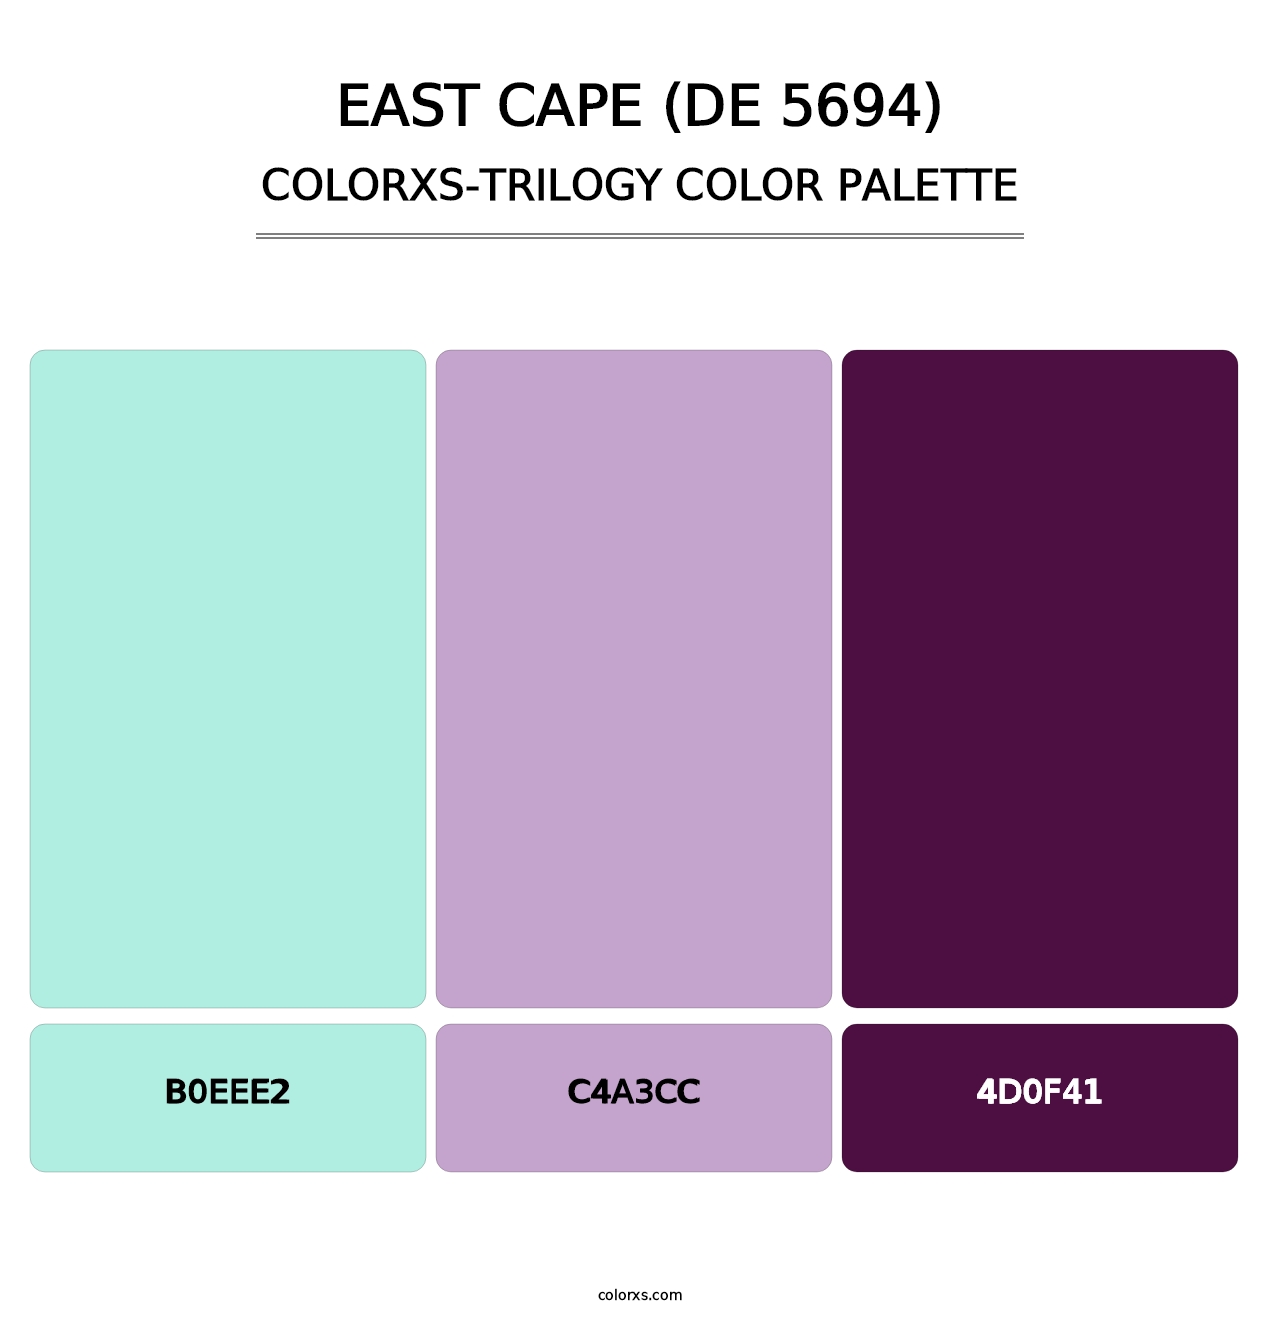 East Cape (DE 5694) - Colorxs Trilogy Palette